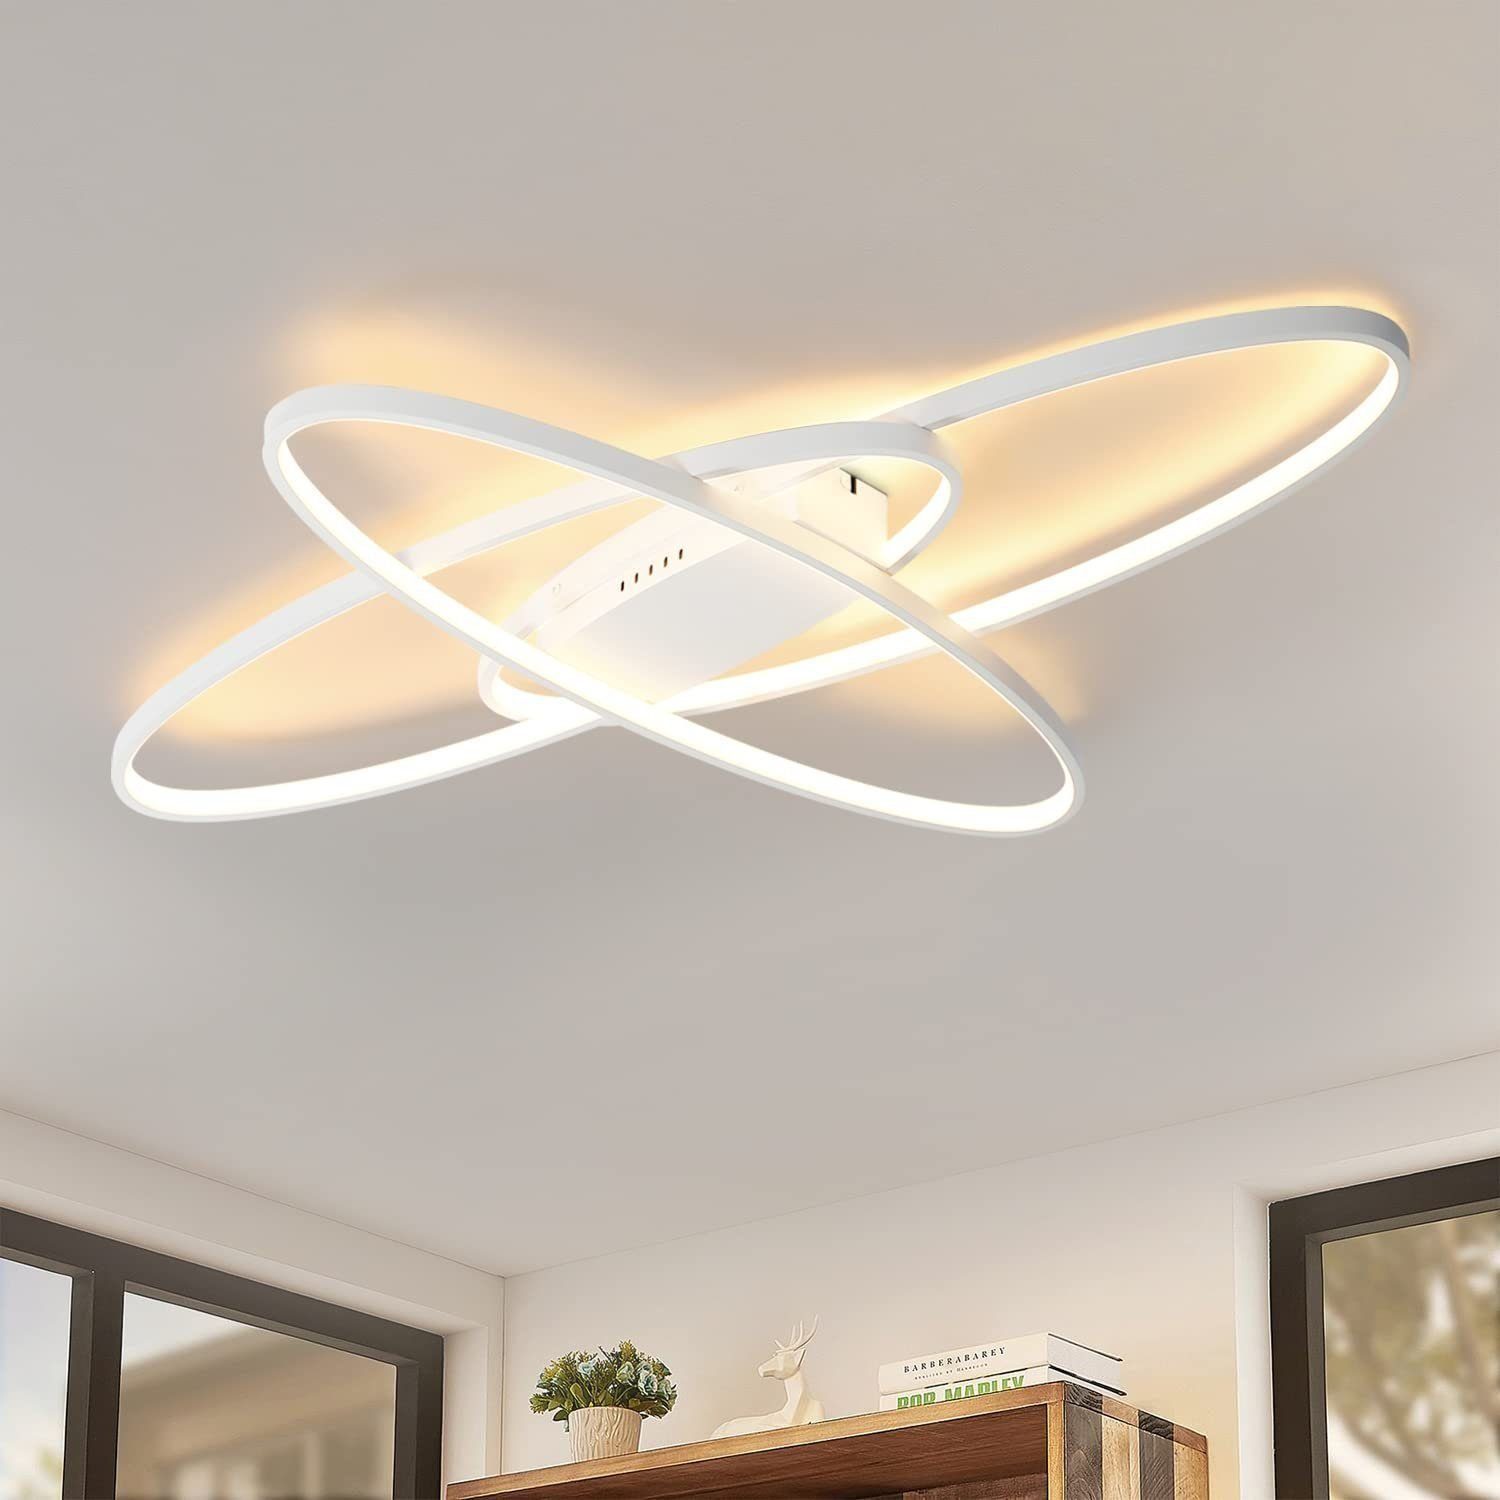 DOPWii Deckenleuchten LED Leuchte,3-farbig Deckenlampe mit Fernbedienung Weiss | Deckenlampen